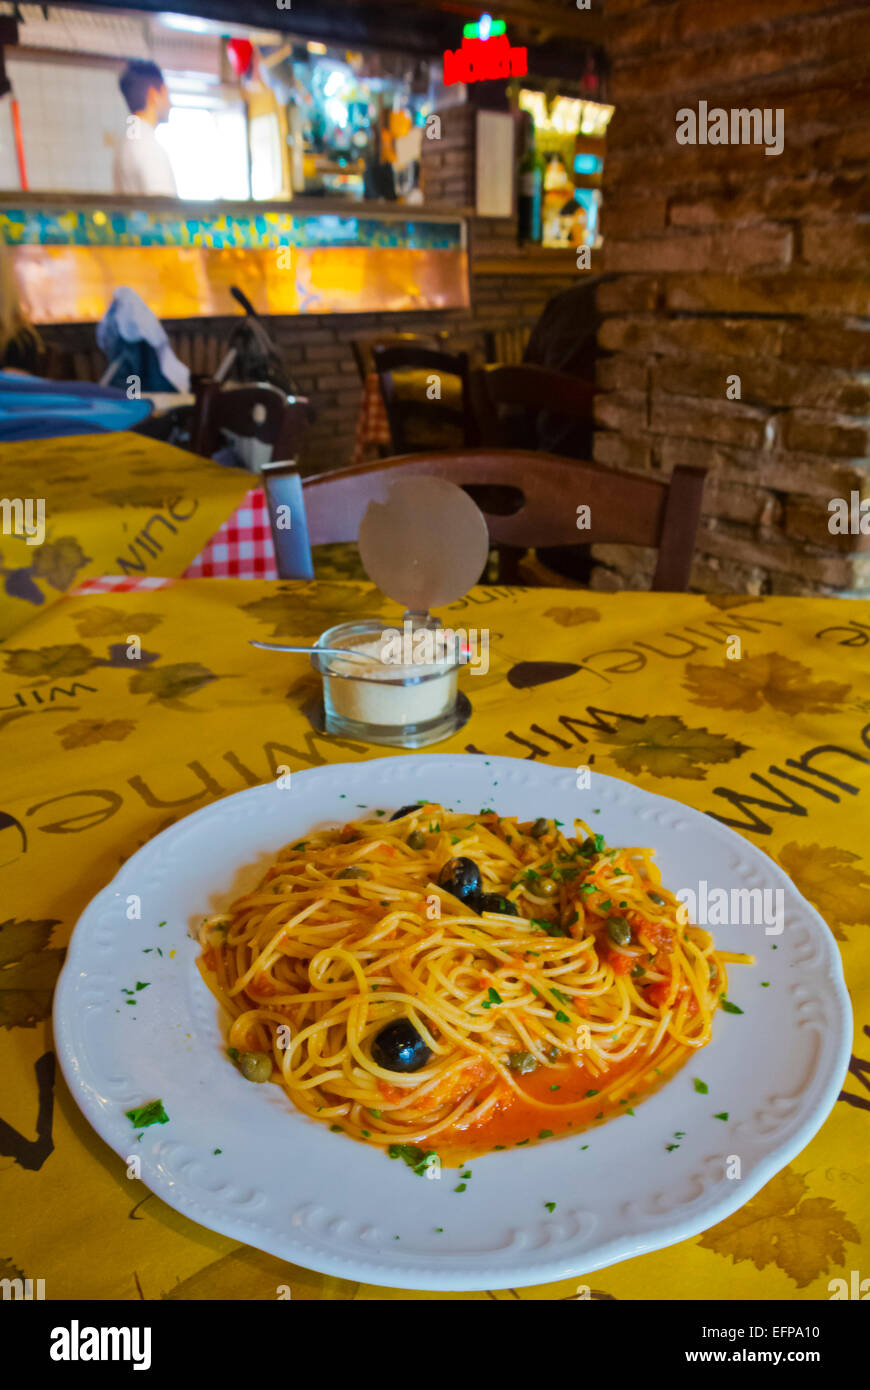 Seafood sgaghetti, C'era una volta restaurant, centro storico, Pesaro, Marche region, Italy Stock Photo